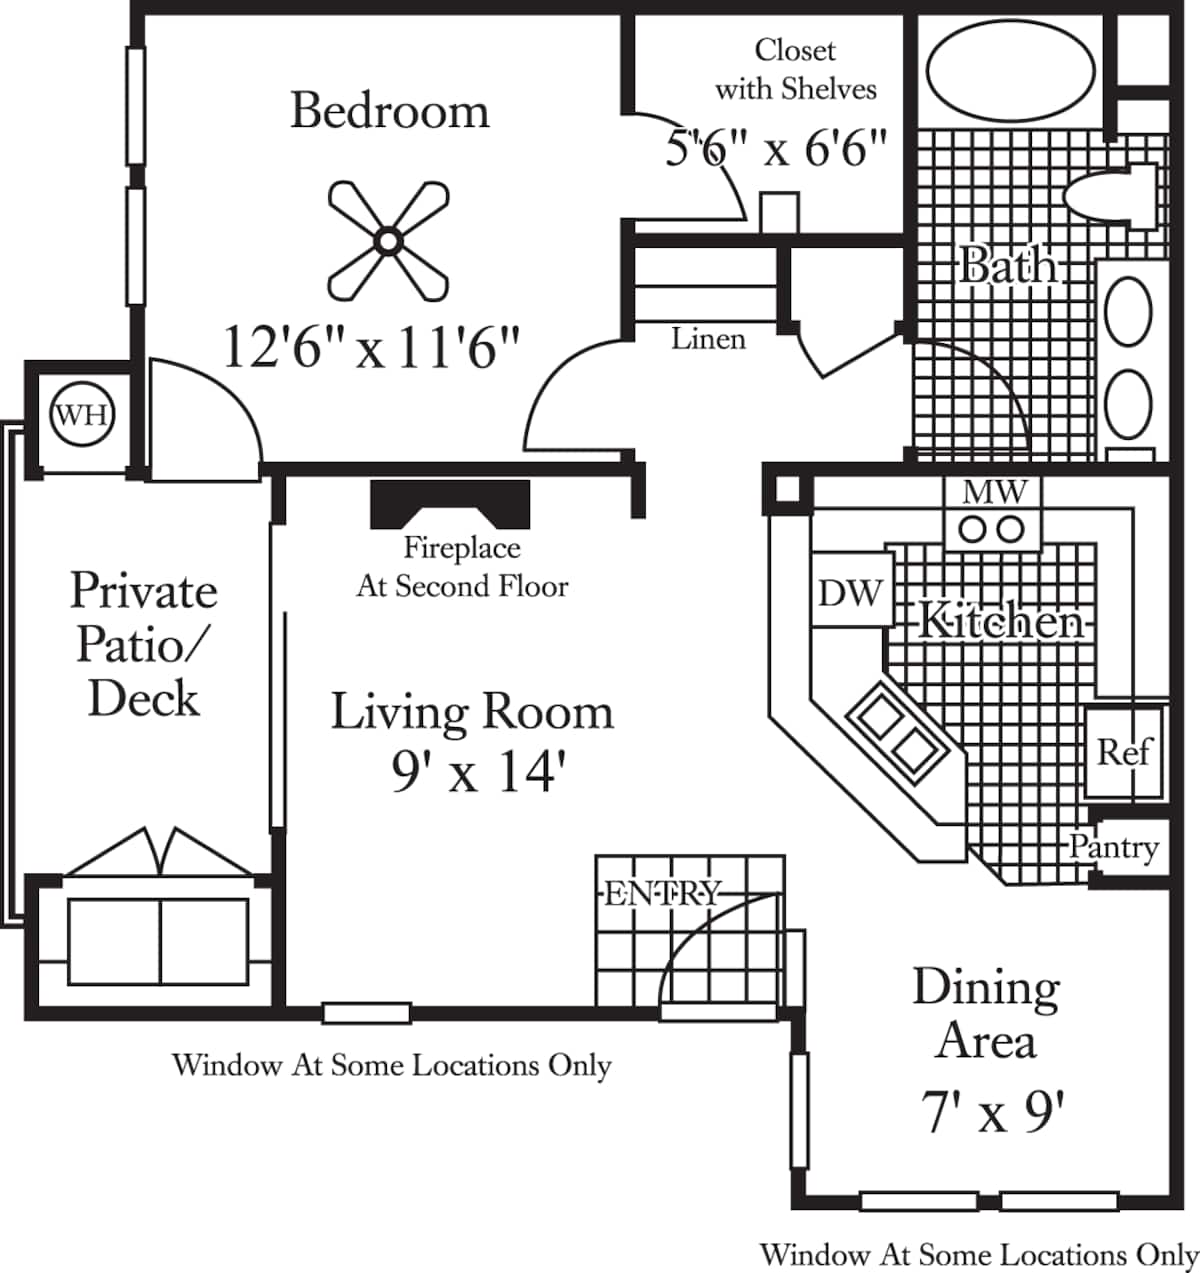 Floorplan diagram for Mt. Baldy, showing 1 bedroom